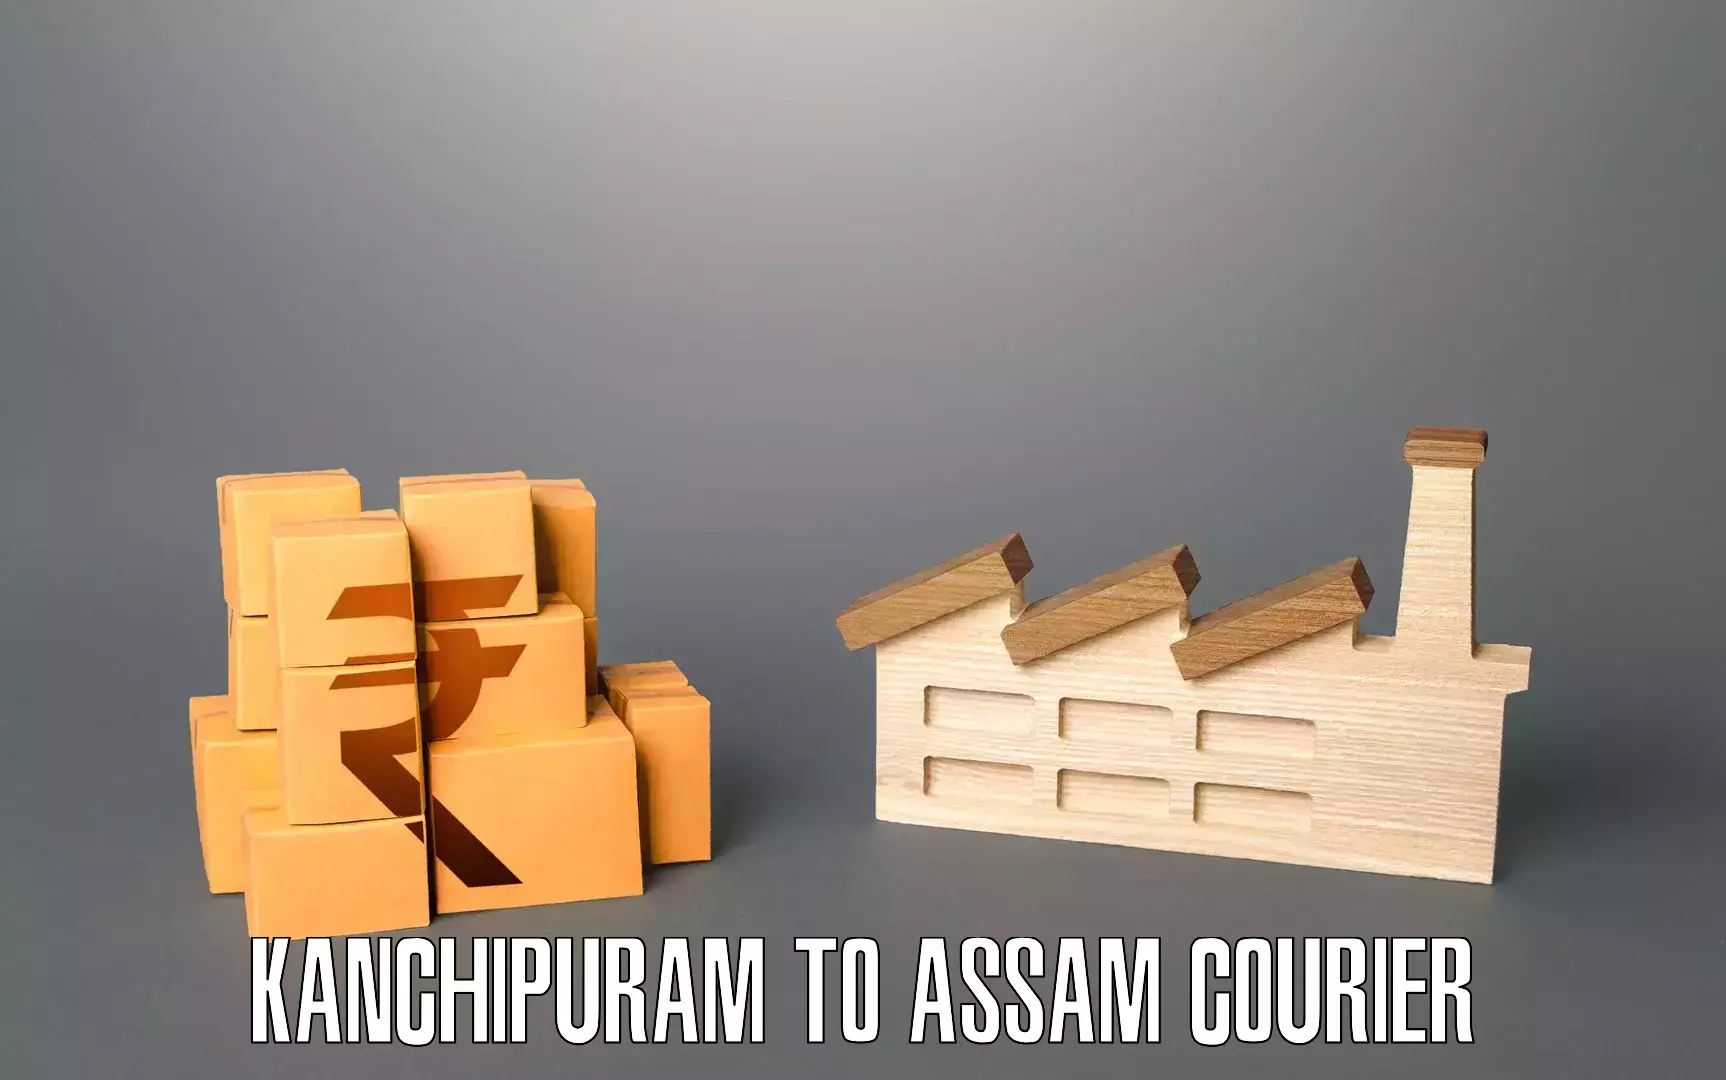 Furniture moving experts Kanchipuram to IIIT Guwahati